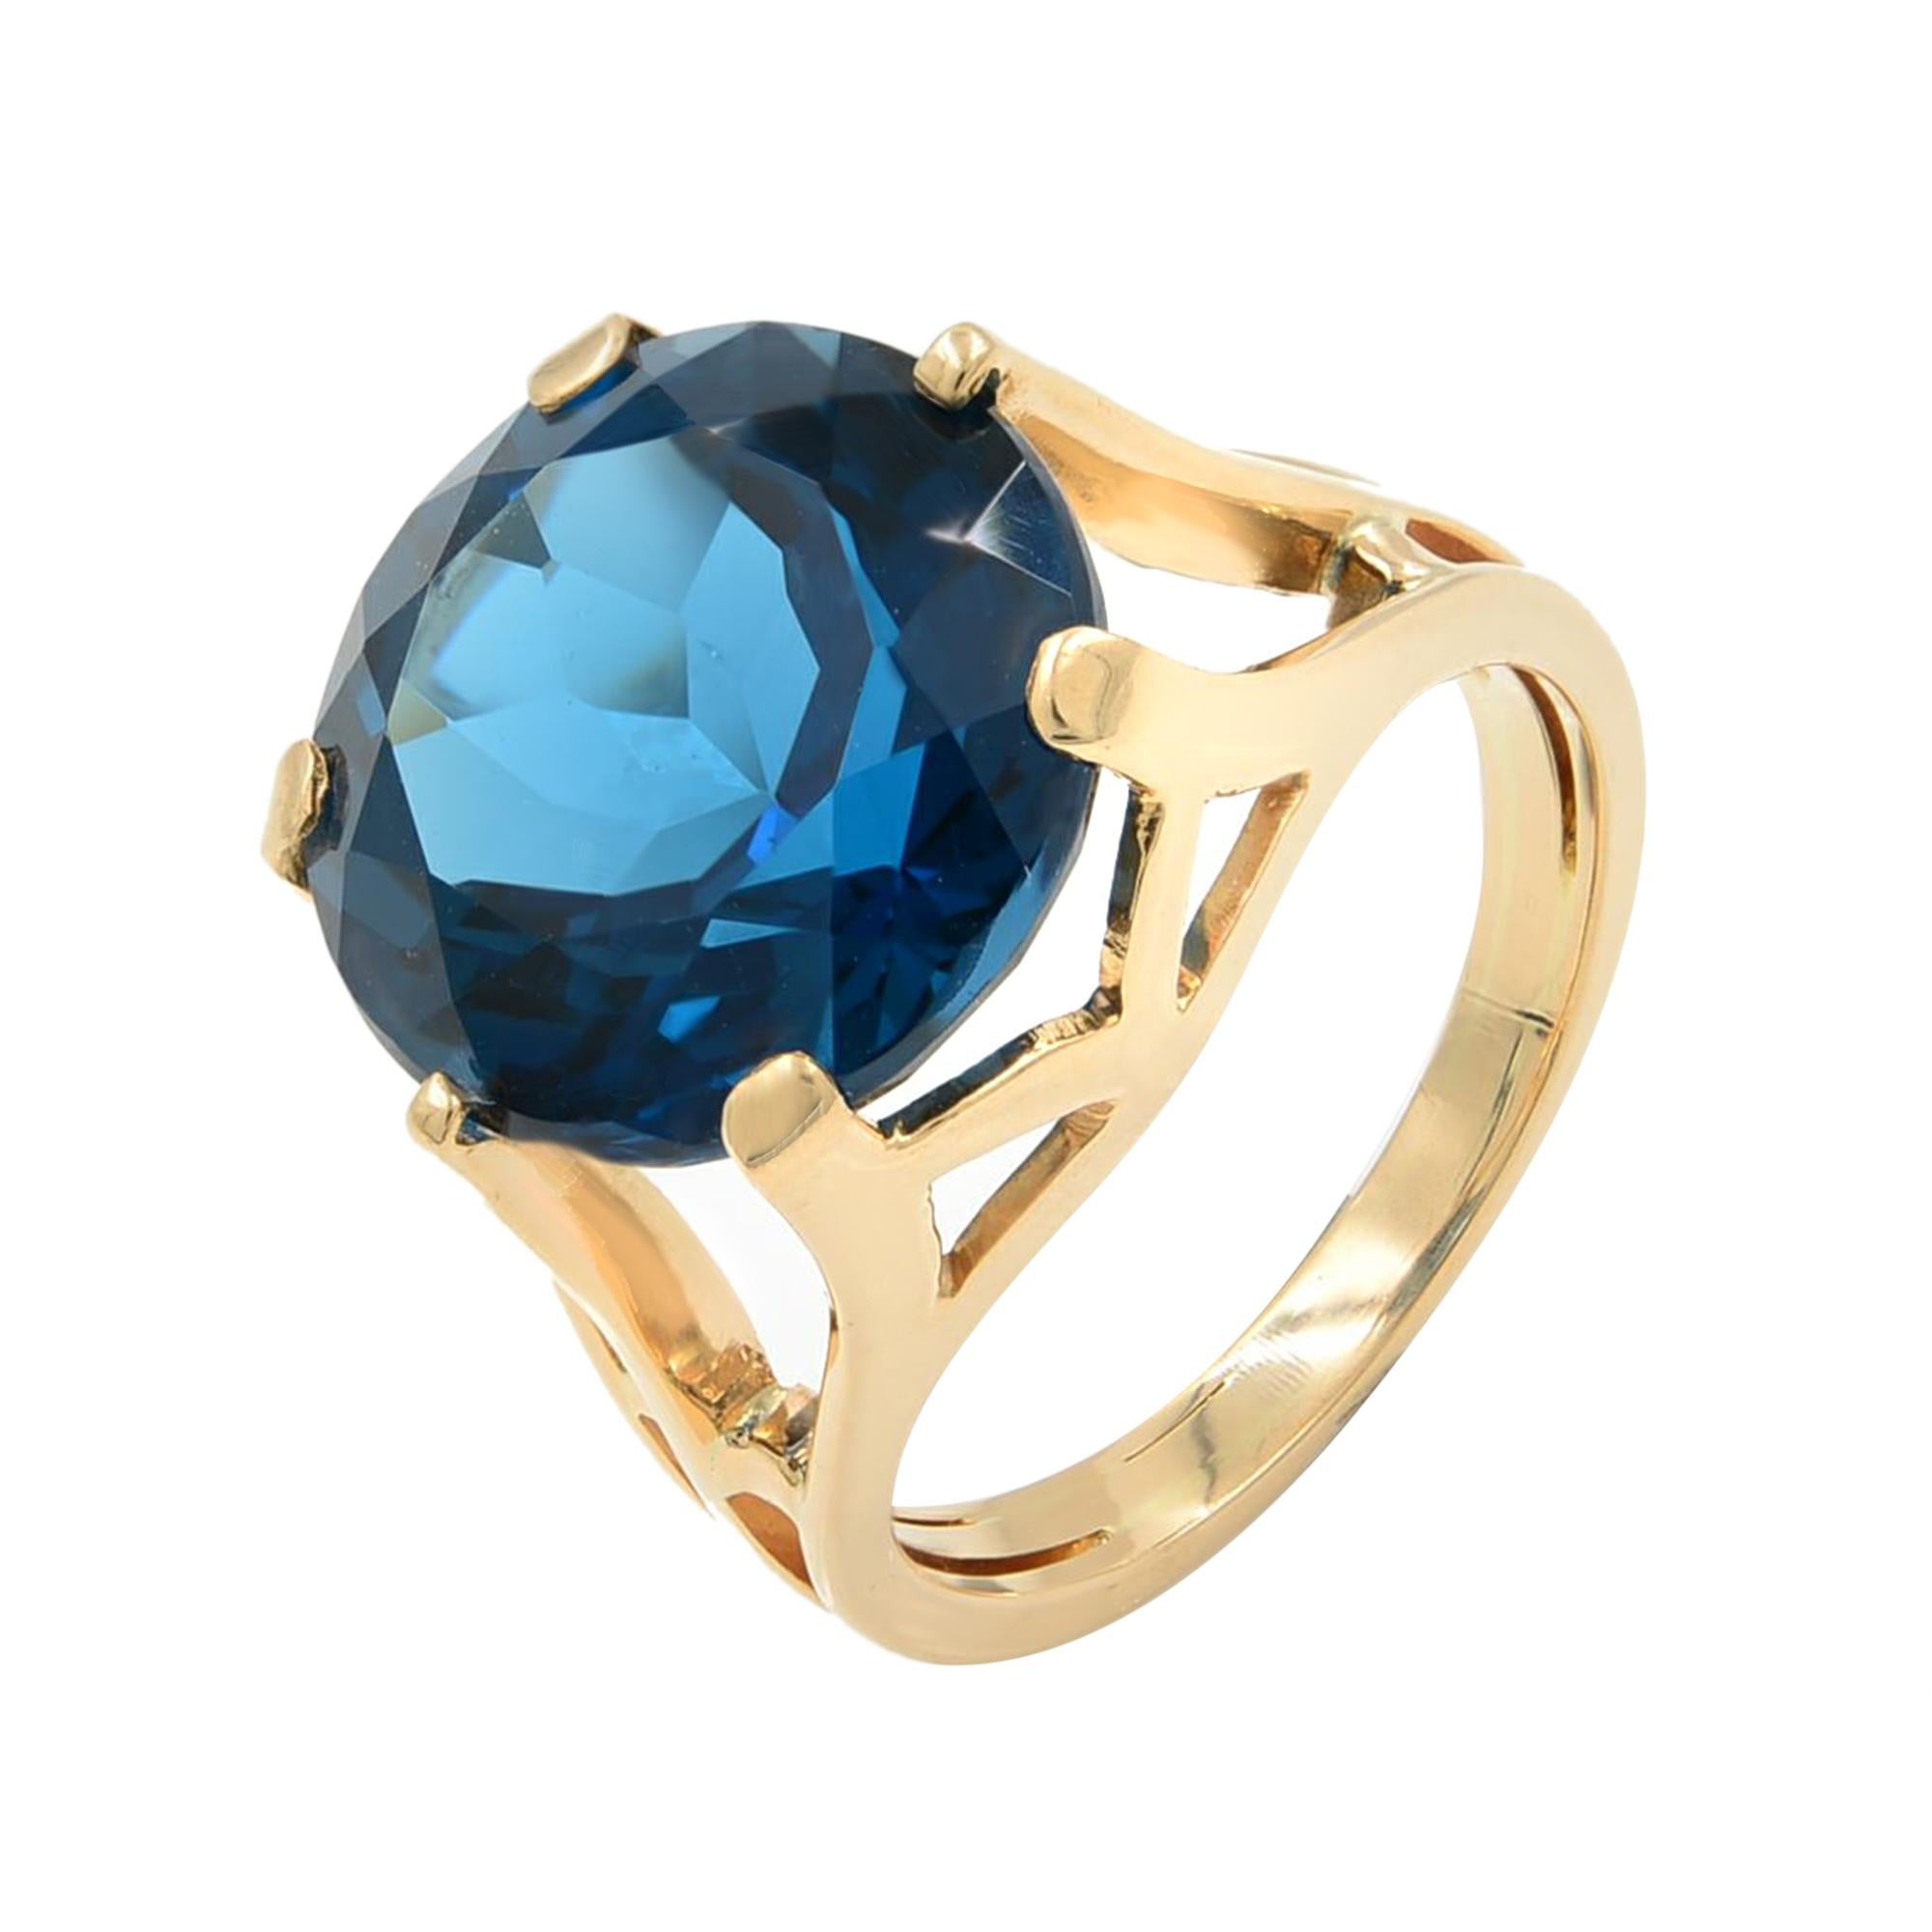 Round Cut Large London Blue Topaz 8.5 Carat Ring 14 Karat Rose Gold